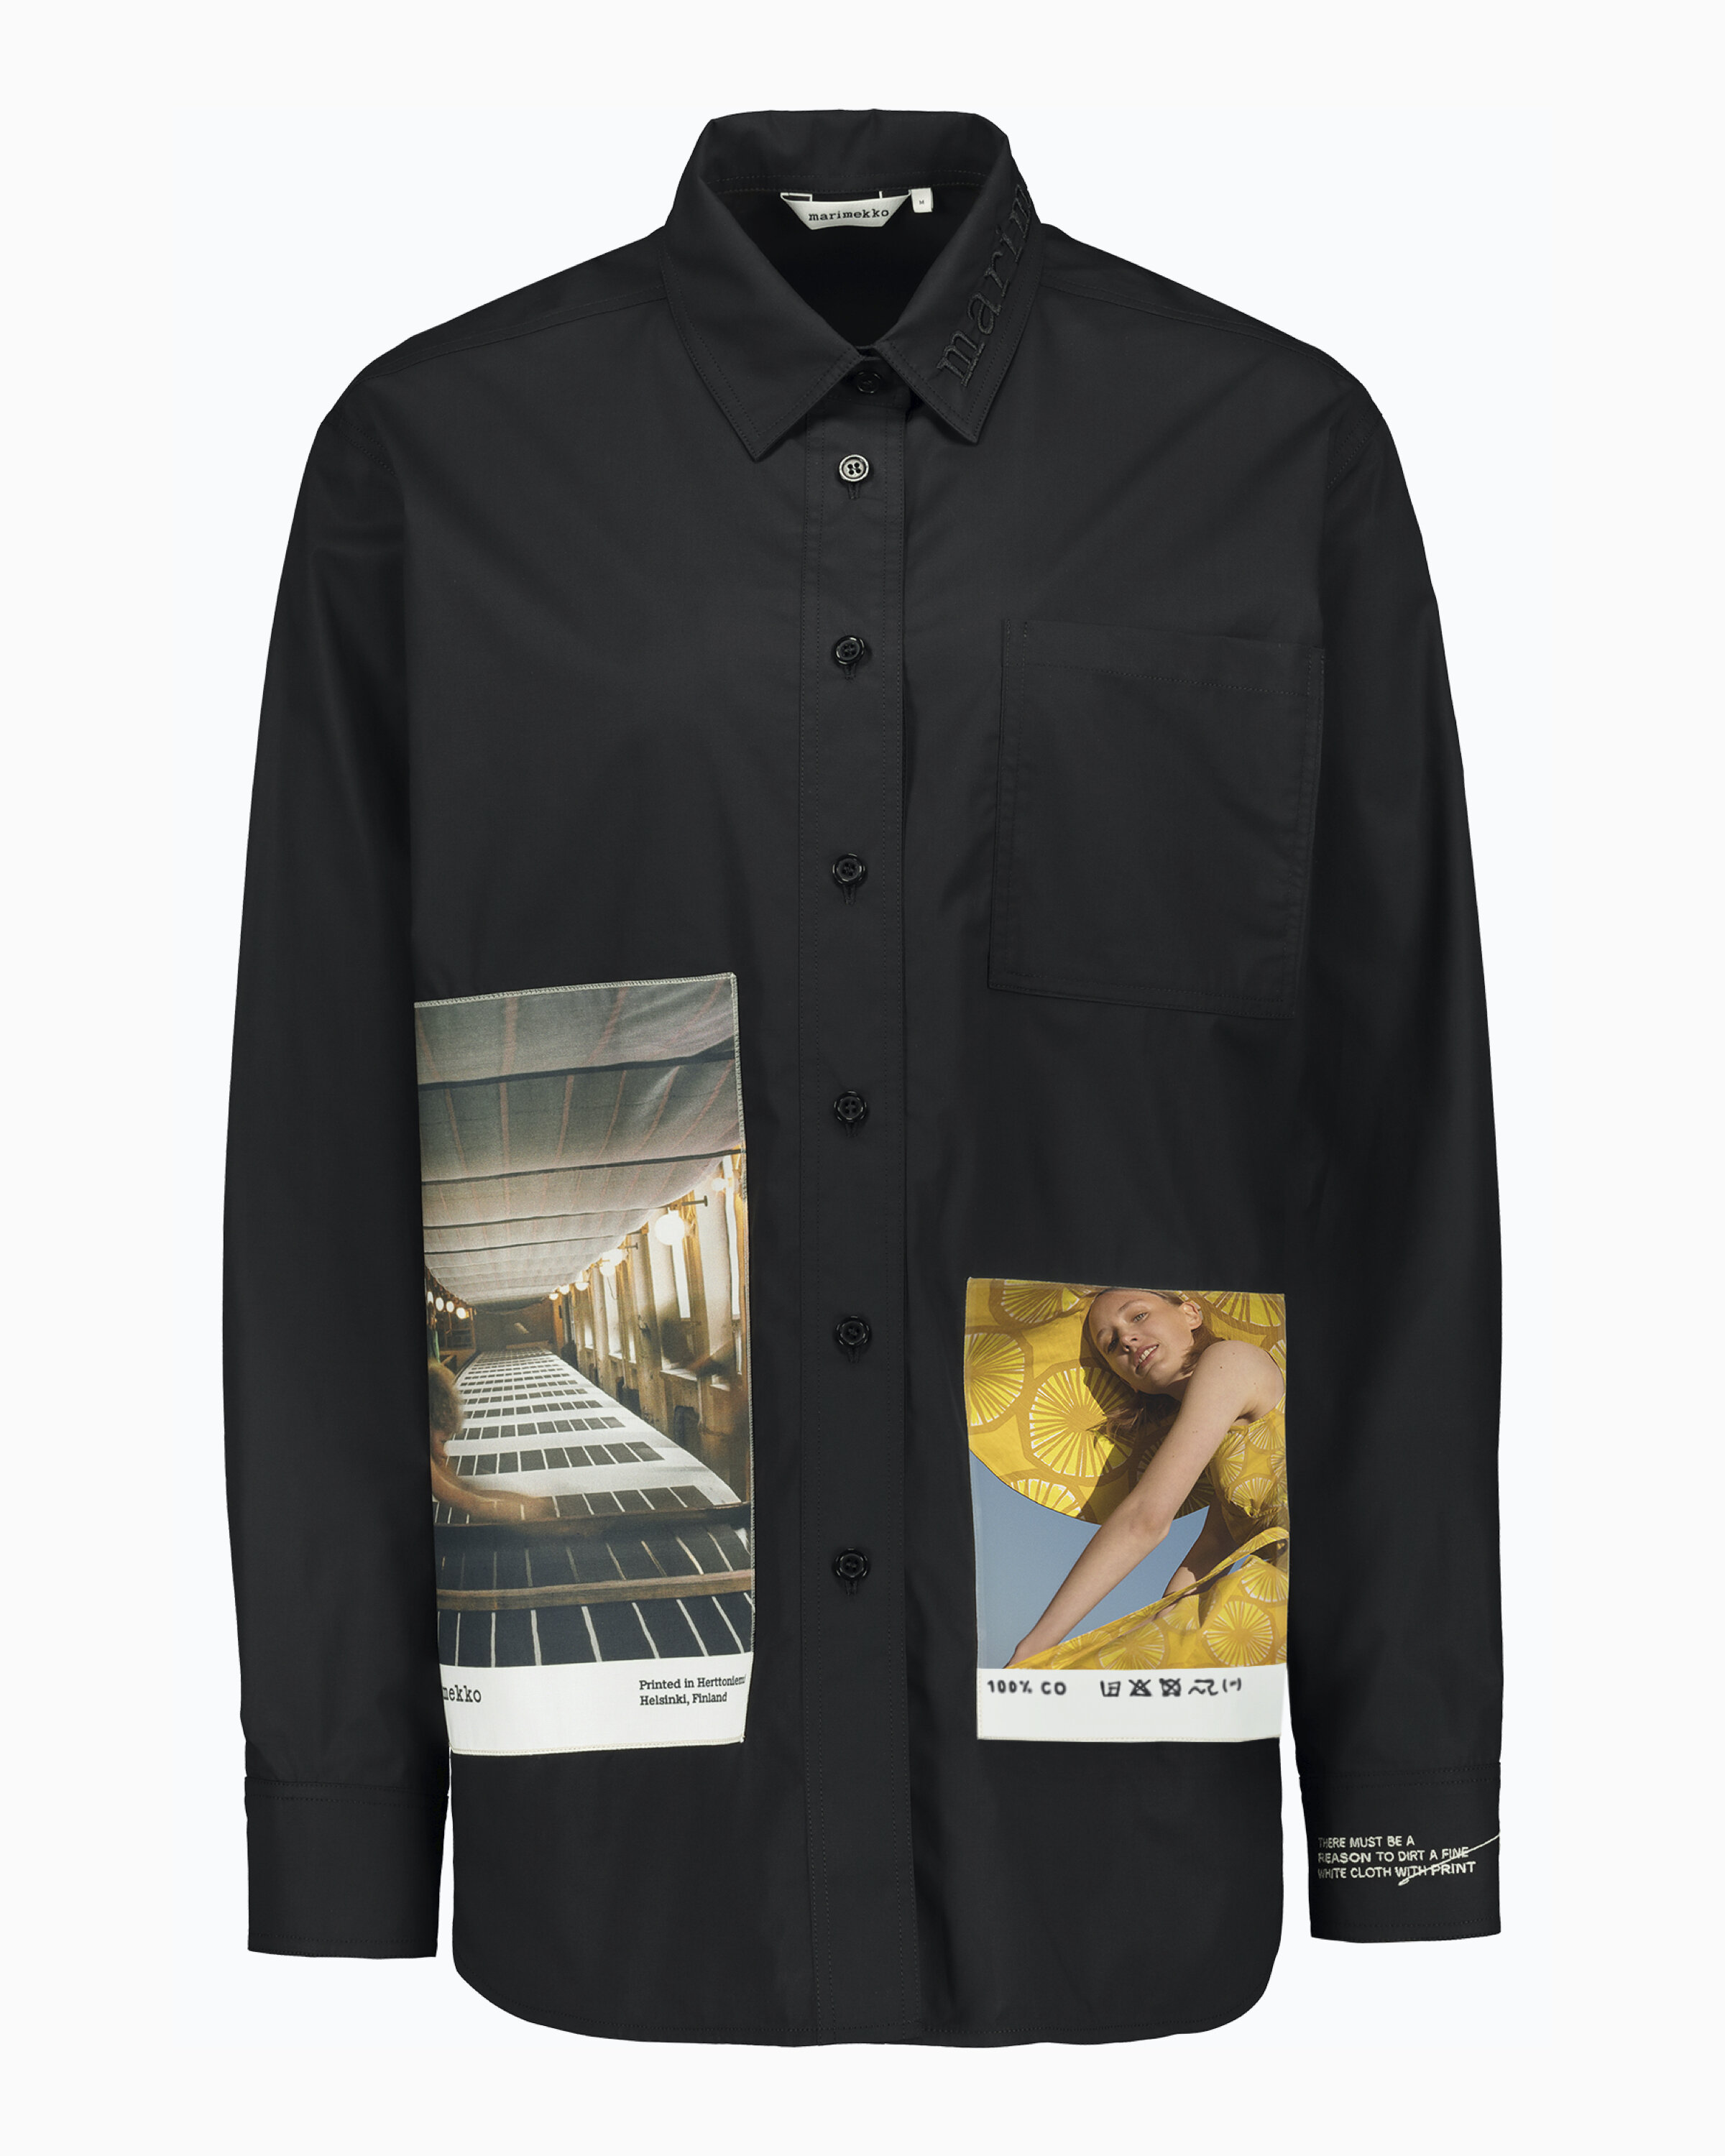 Marimekko Co-Created Shirt